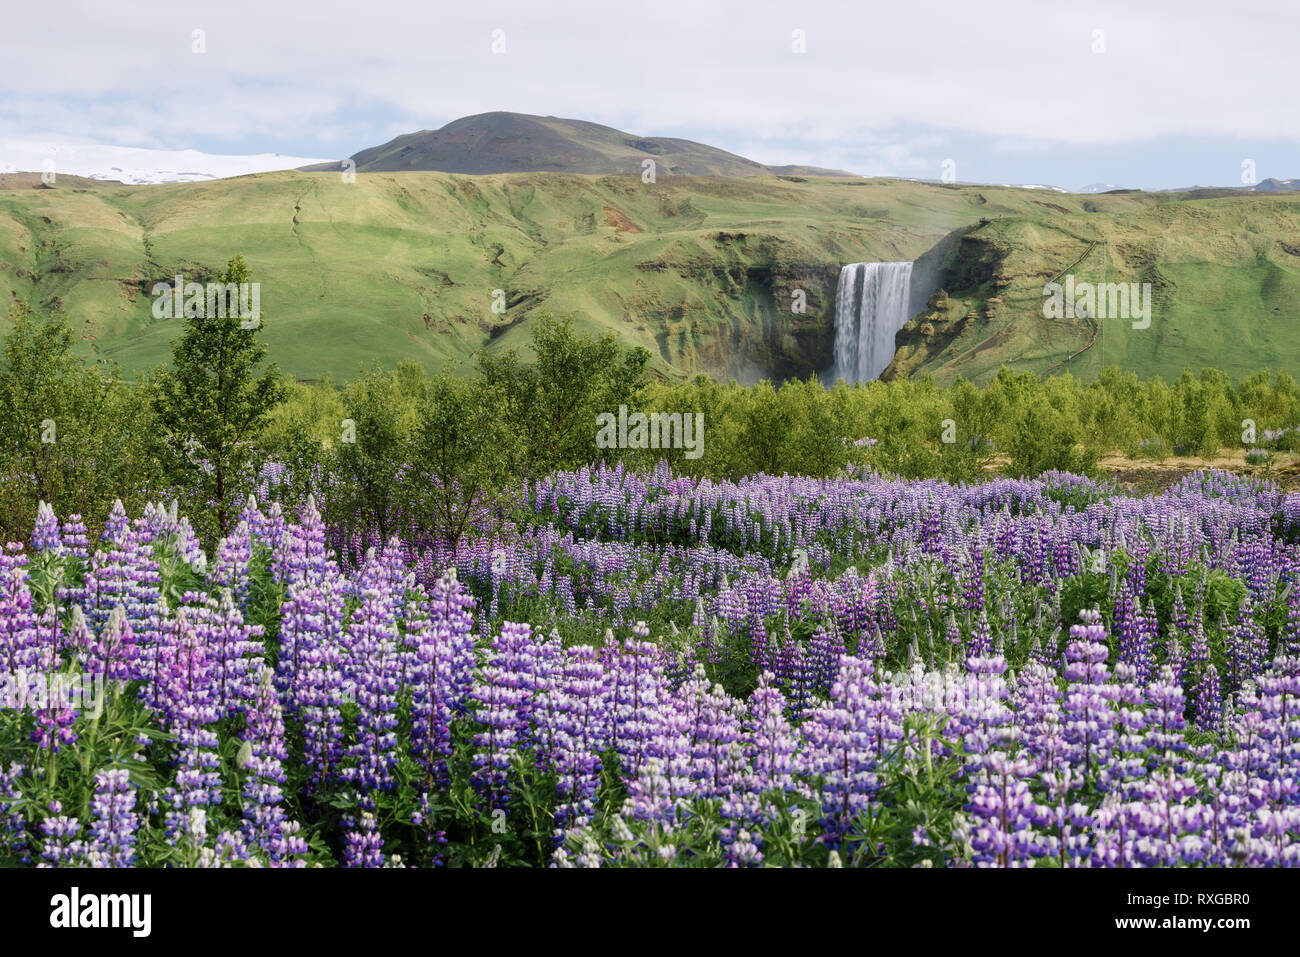 Cascade de Skogafoss et lupin en fleurs, de l'Islande. Paysage islandais typique. Jour d'été ensoleillé Banque D'Images